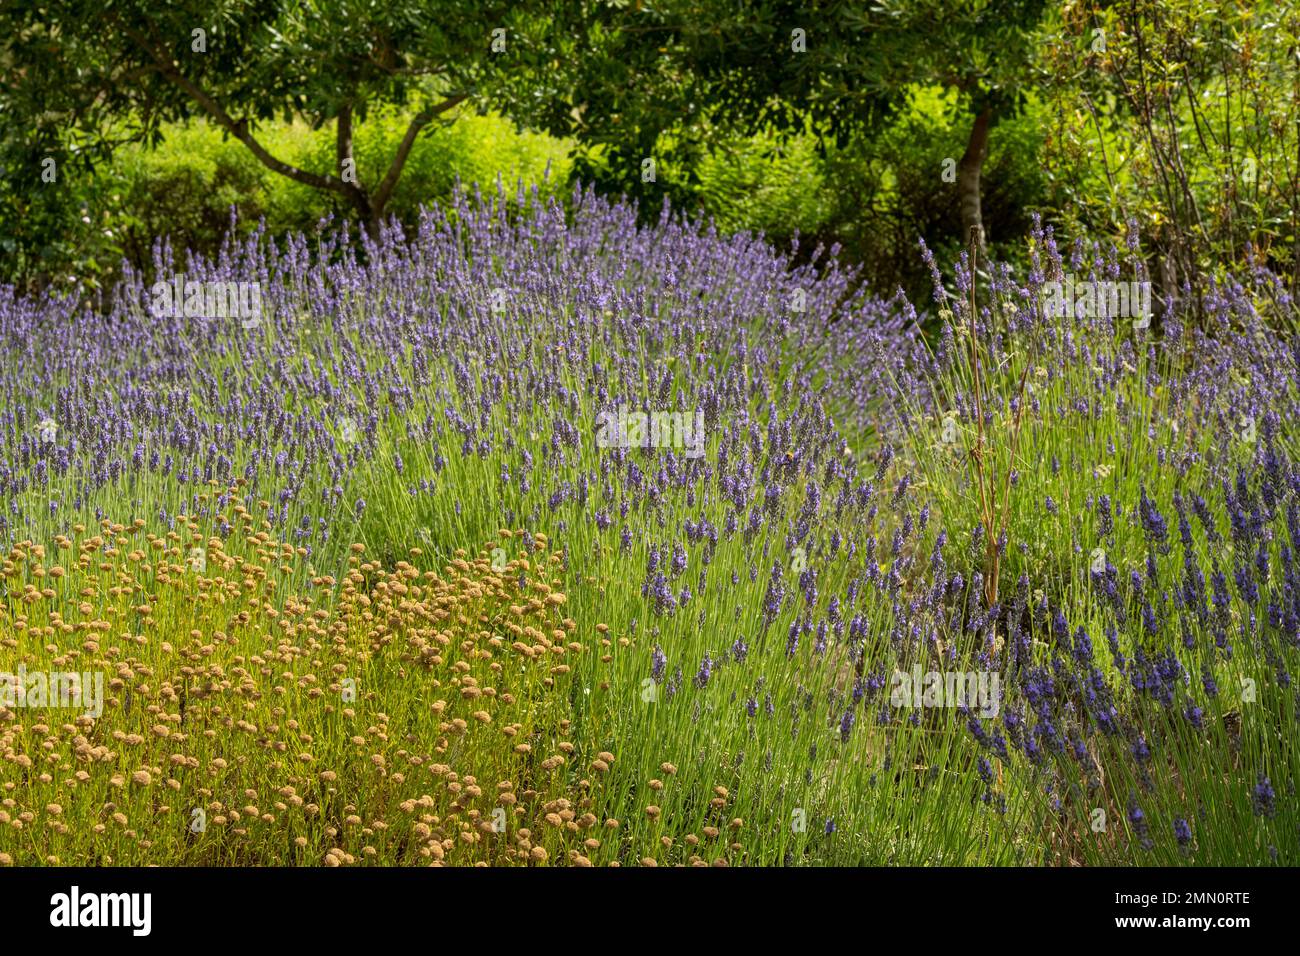 France, Alpes-Maritimes, Mouans-Sartoux, les Jardins du Musée International de parfumerie (Musée International de la Parfumerie - MIP) nous invitent à découvrir une grande variété de plantes parfumées Banque D'Images